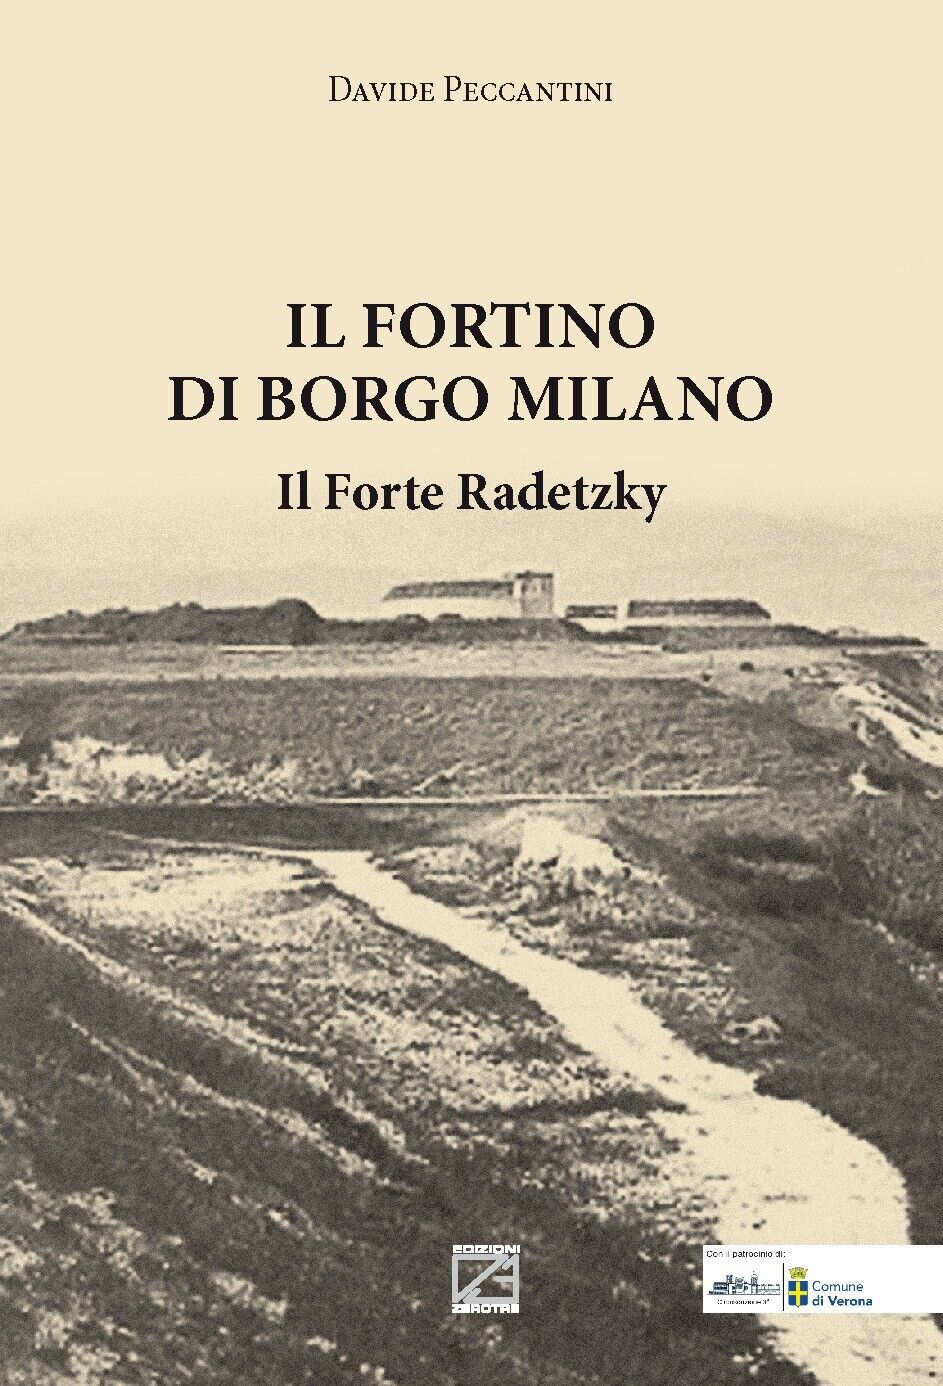 Il Fortino di Borgo Milano. Il Forte Radetzky di Davide Peccantini, 2020, Edi